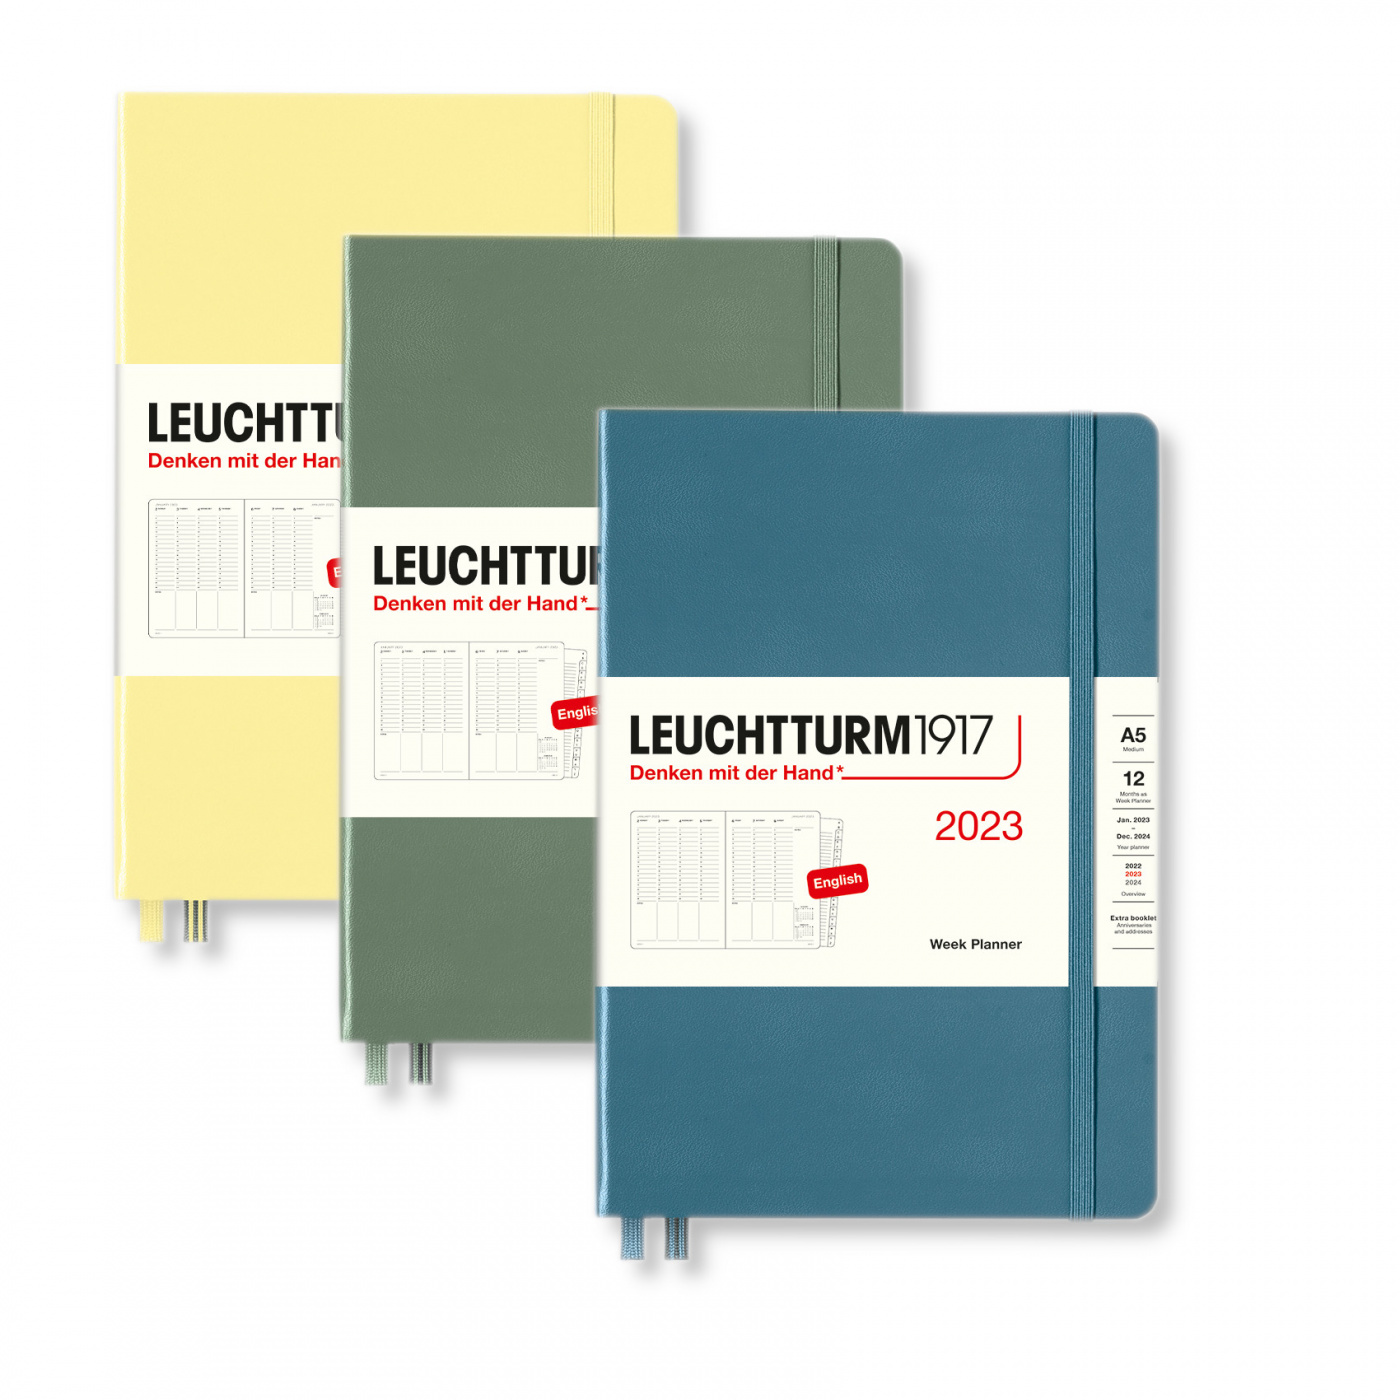 Еженедельник Leuchtturm1917 Medium A5 на 2023г дни с расписанием, твердая обложка, цвет: Черный + ал командная строка linux